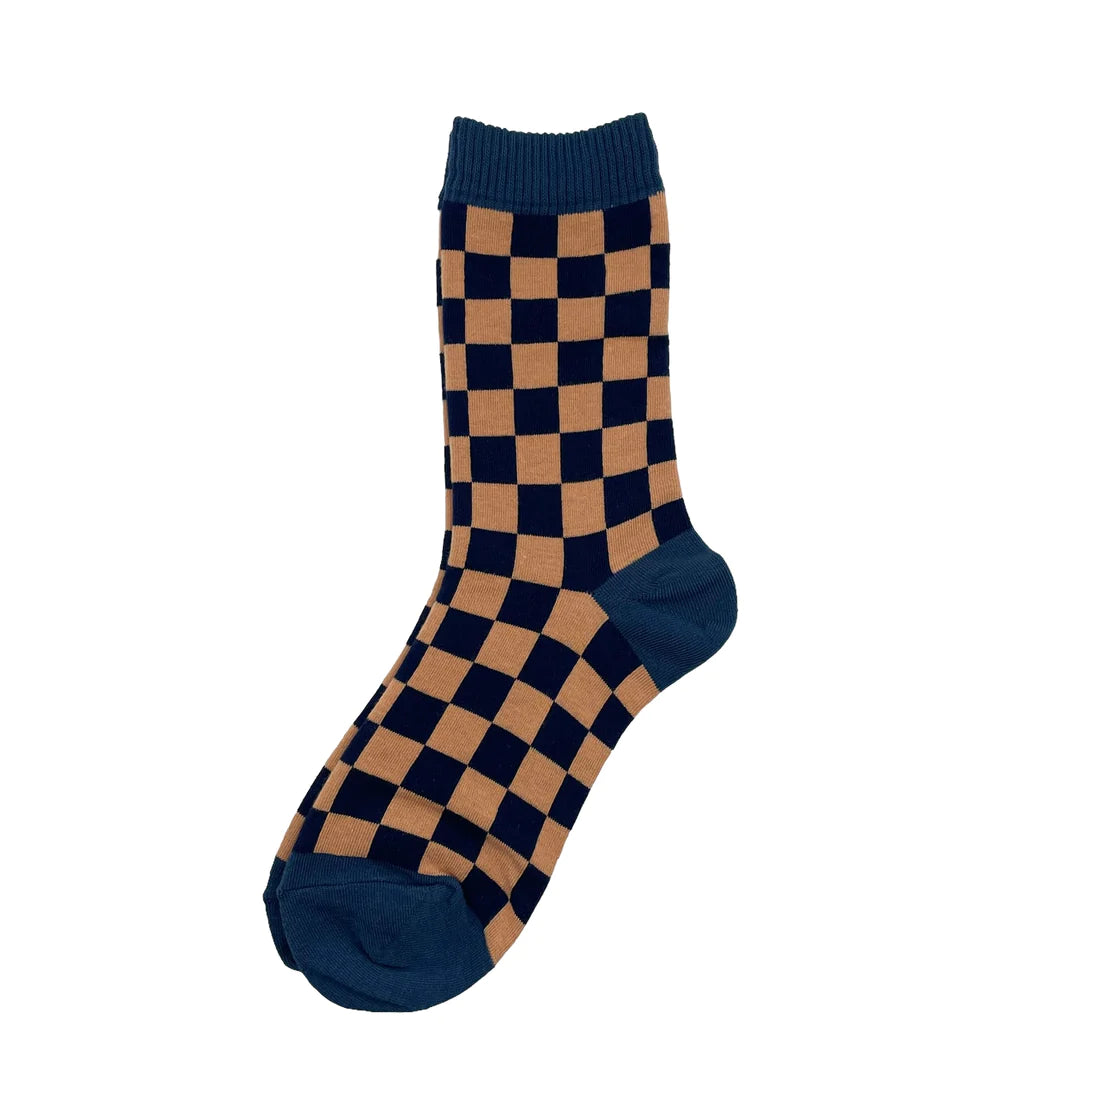 Chequerboard Socks - Blue & Peach